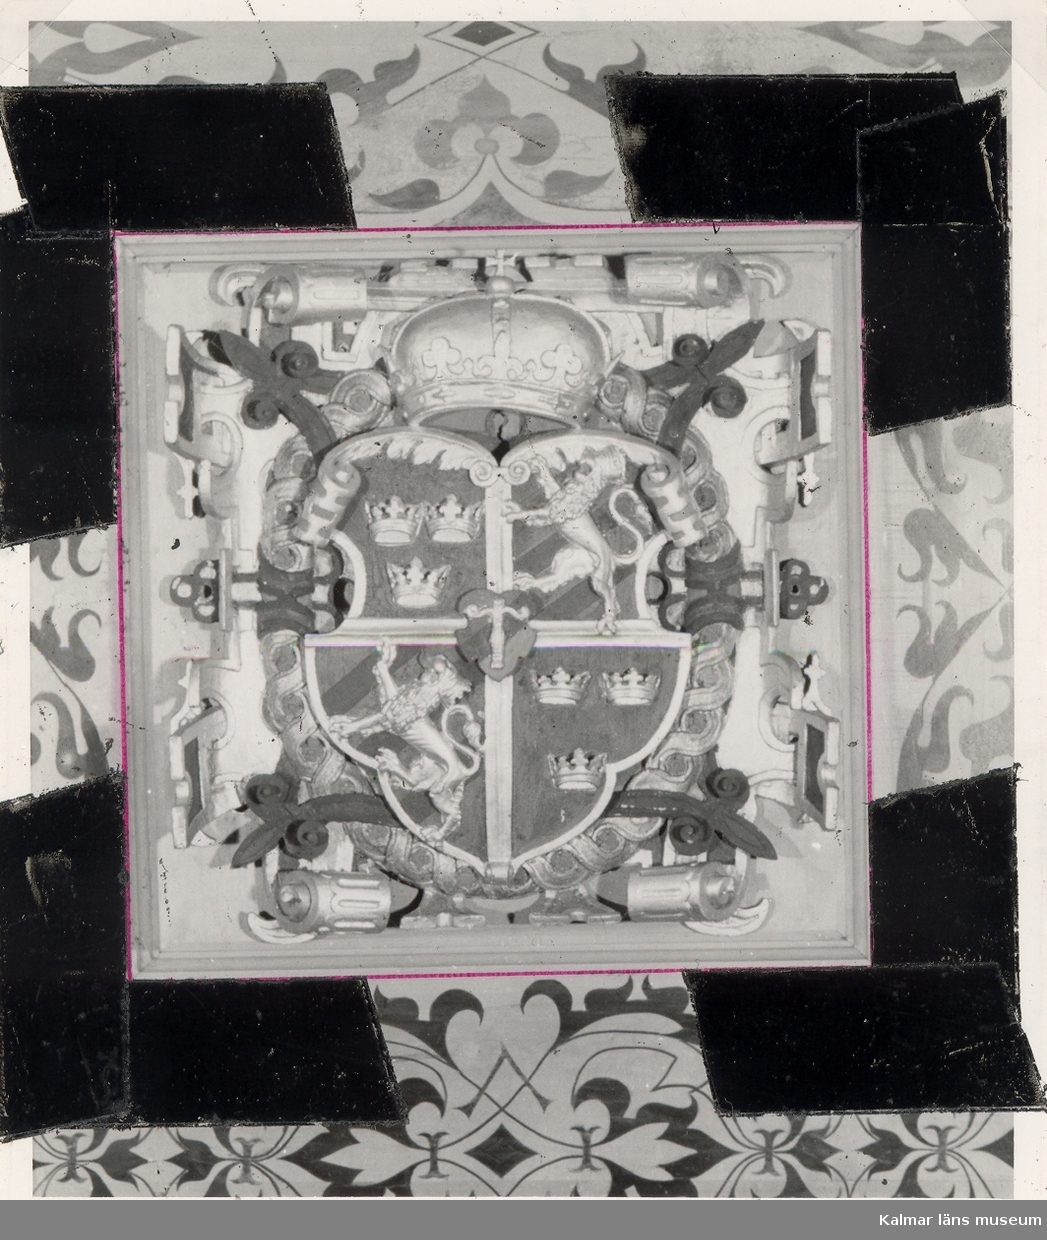 Detalj av kassettaket i Kungsmaket på Kalmar slott.
På vissa plåtar har Martin Olsson klistrat eltejp för att markera hur bilden skulle beskäras i boken.